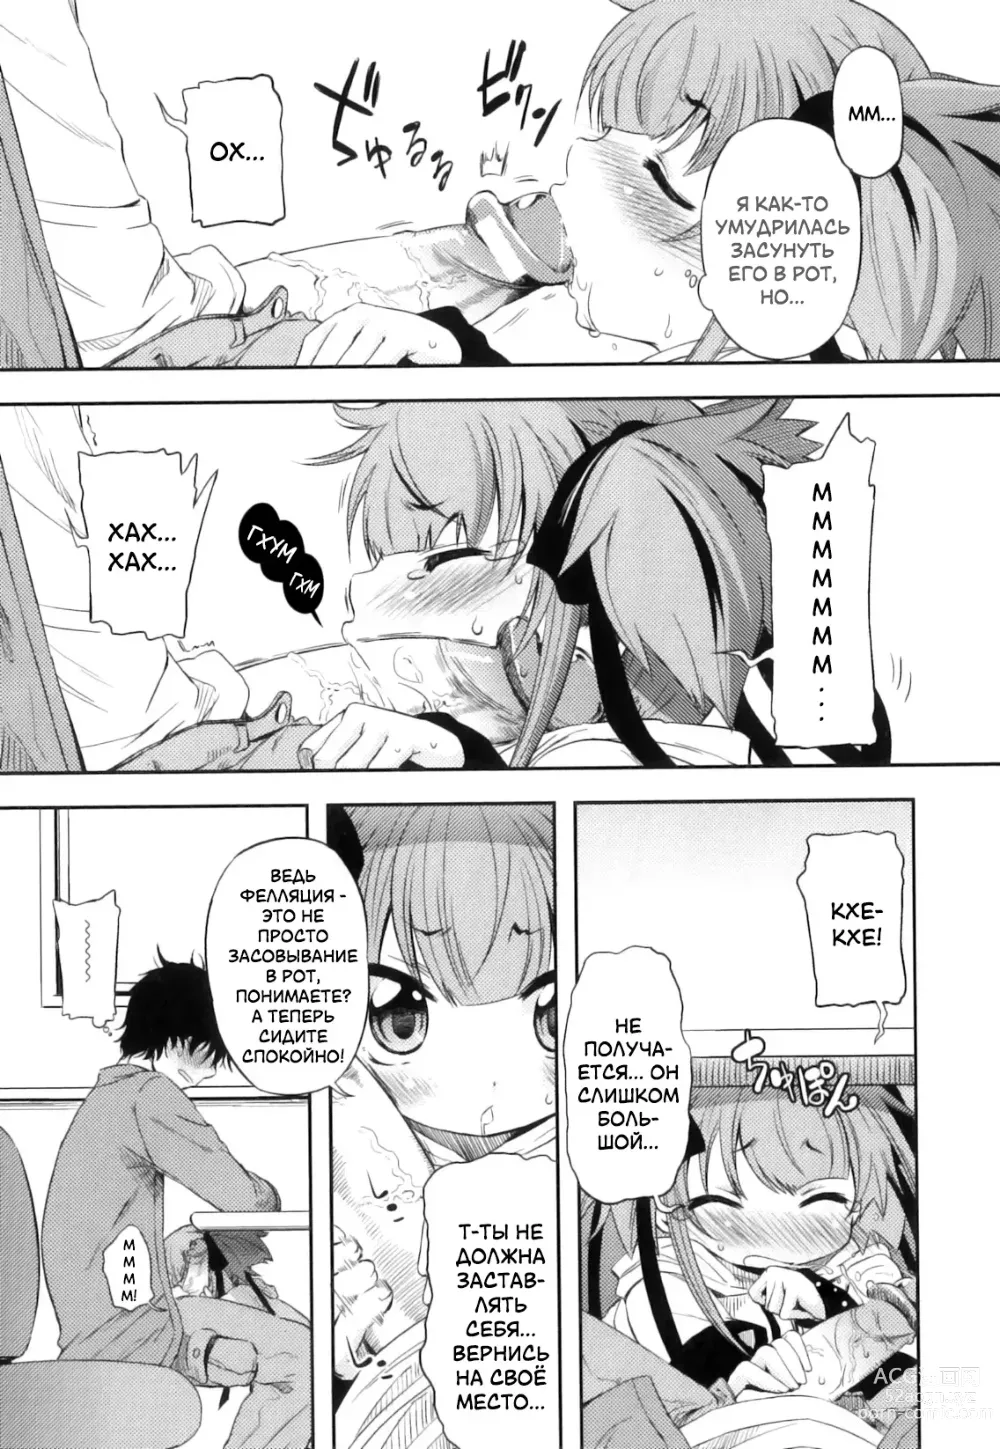 Page 9 of manga Это просто нереально!